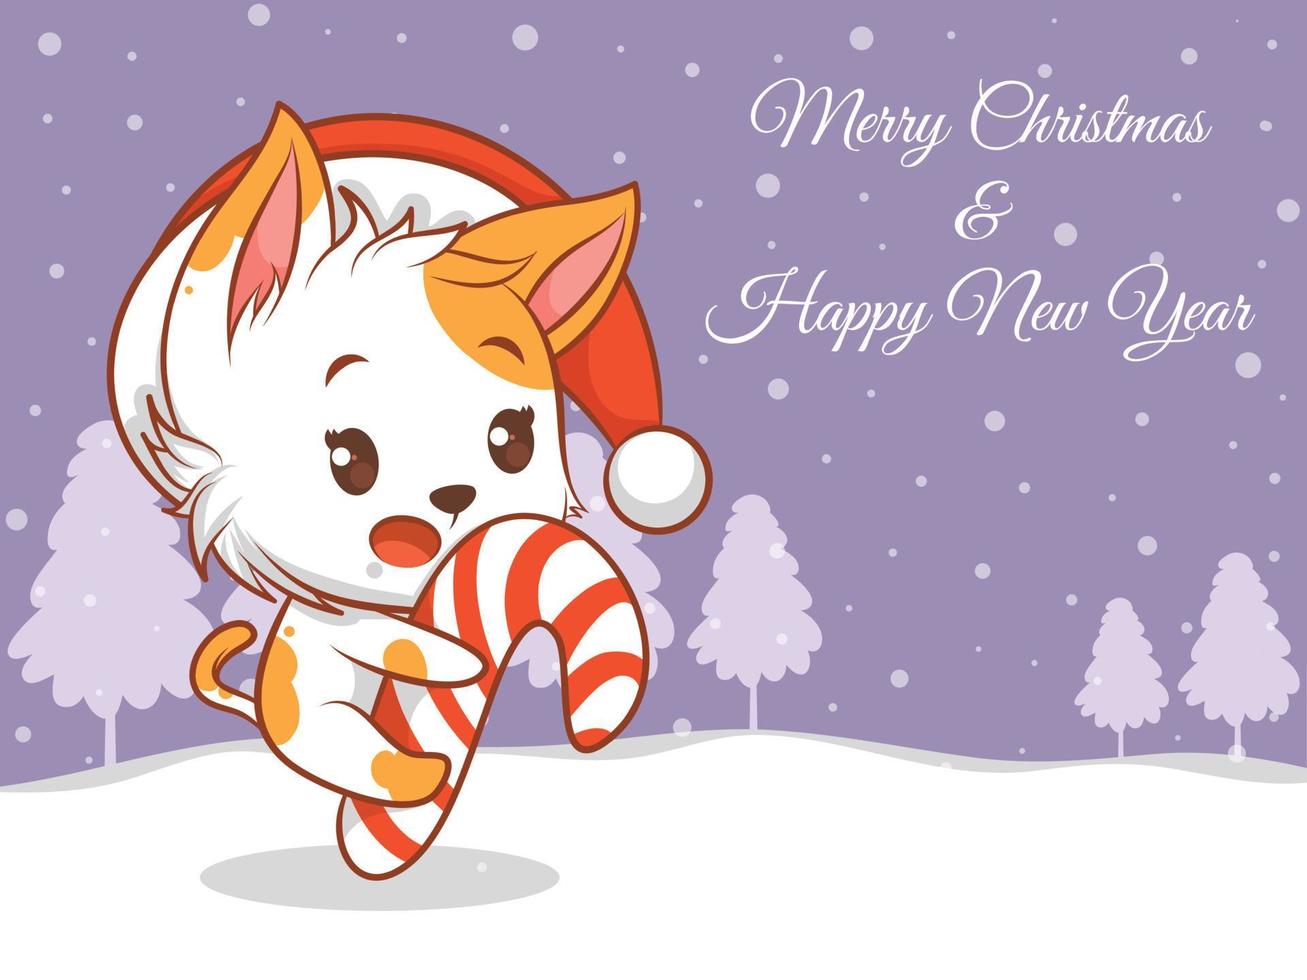 simpatico personaggio dei cartoni animati di gatto con banner di auguri di buon natale e felice anno nuovo. vettore